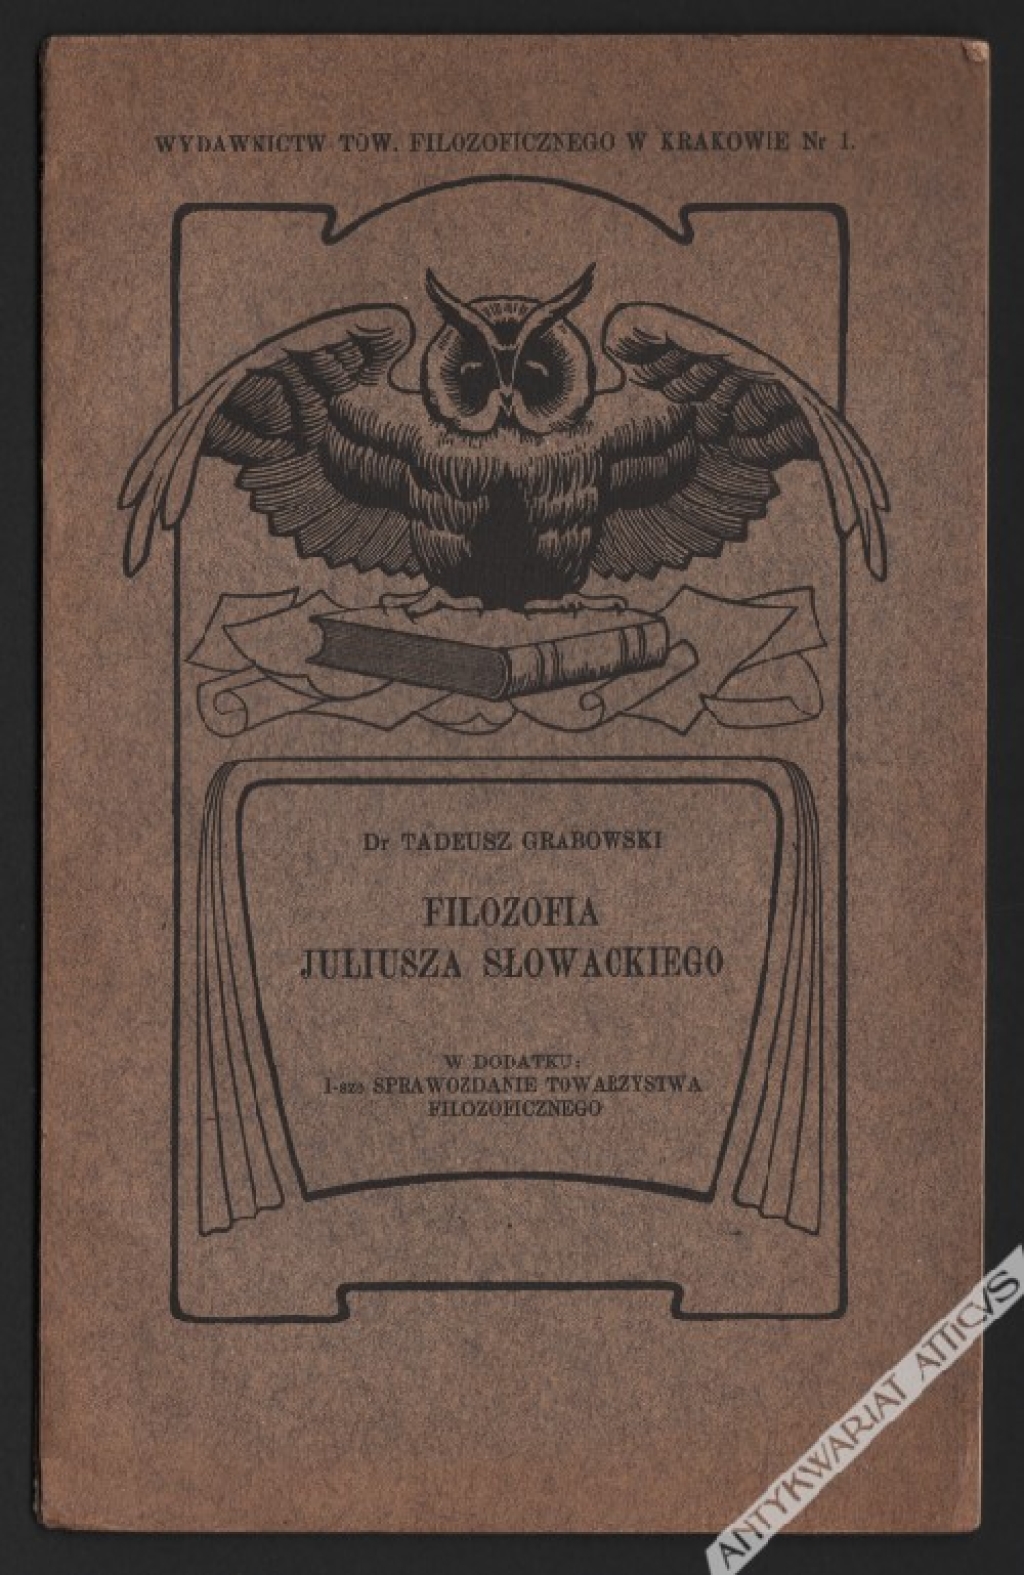 Filozofia Juliusza Słowackiego. Odczyt na Walnym Zgromadzeniu Tow. Filozoficznego w Krakowie dnia 26 stycznia 1909 r.